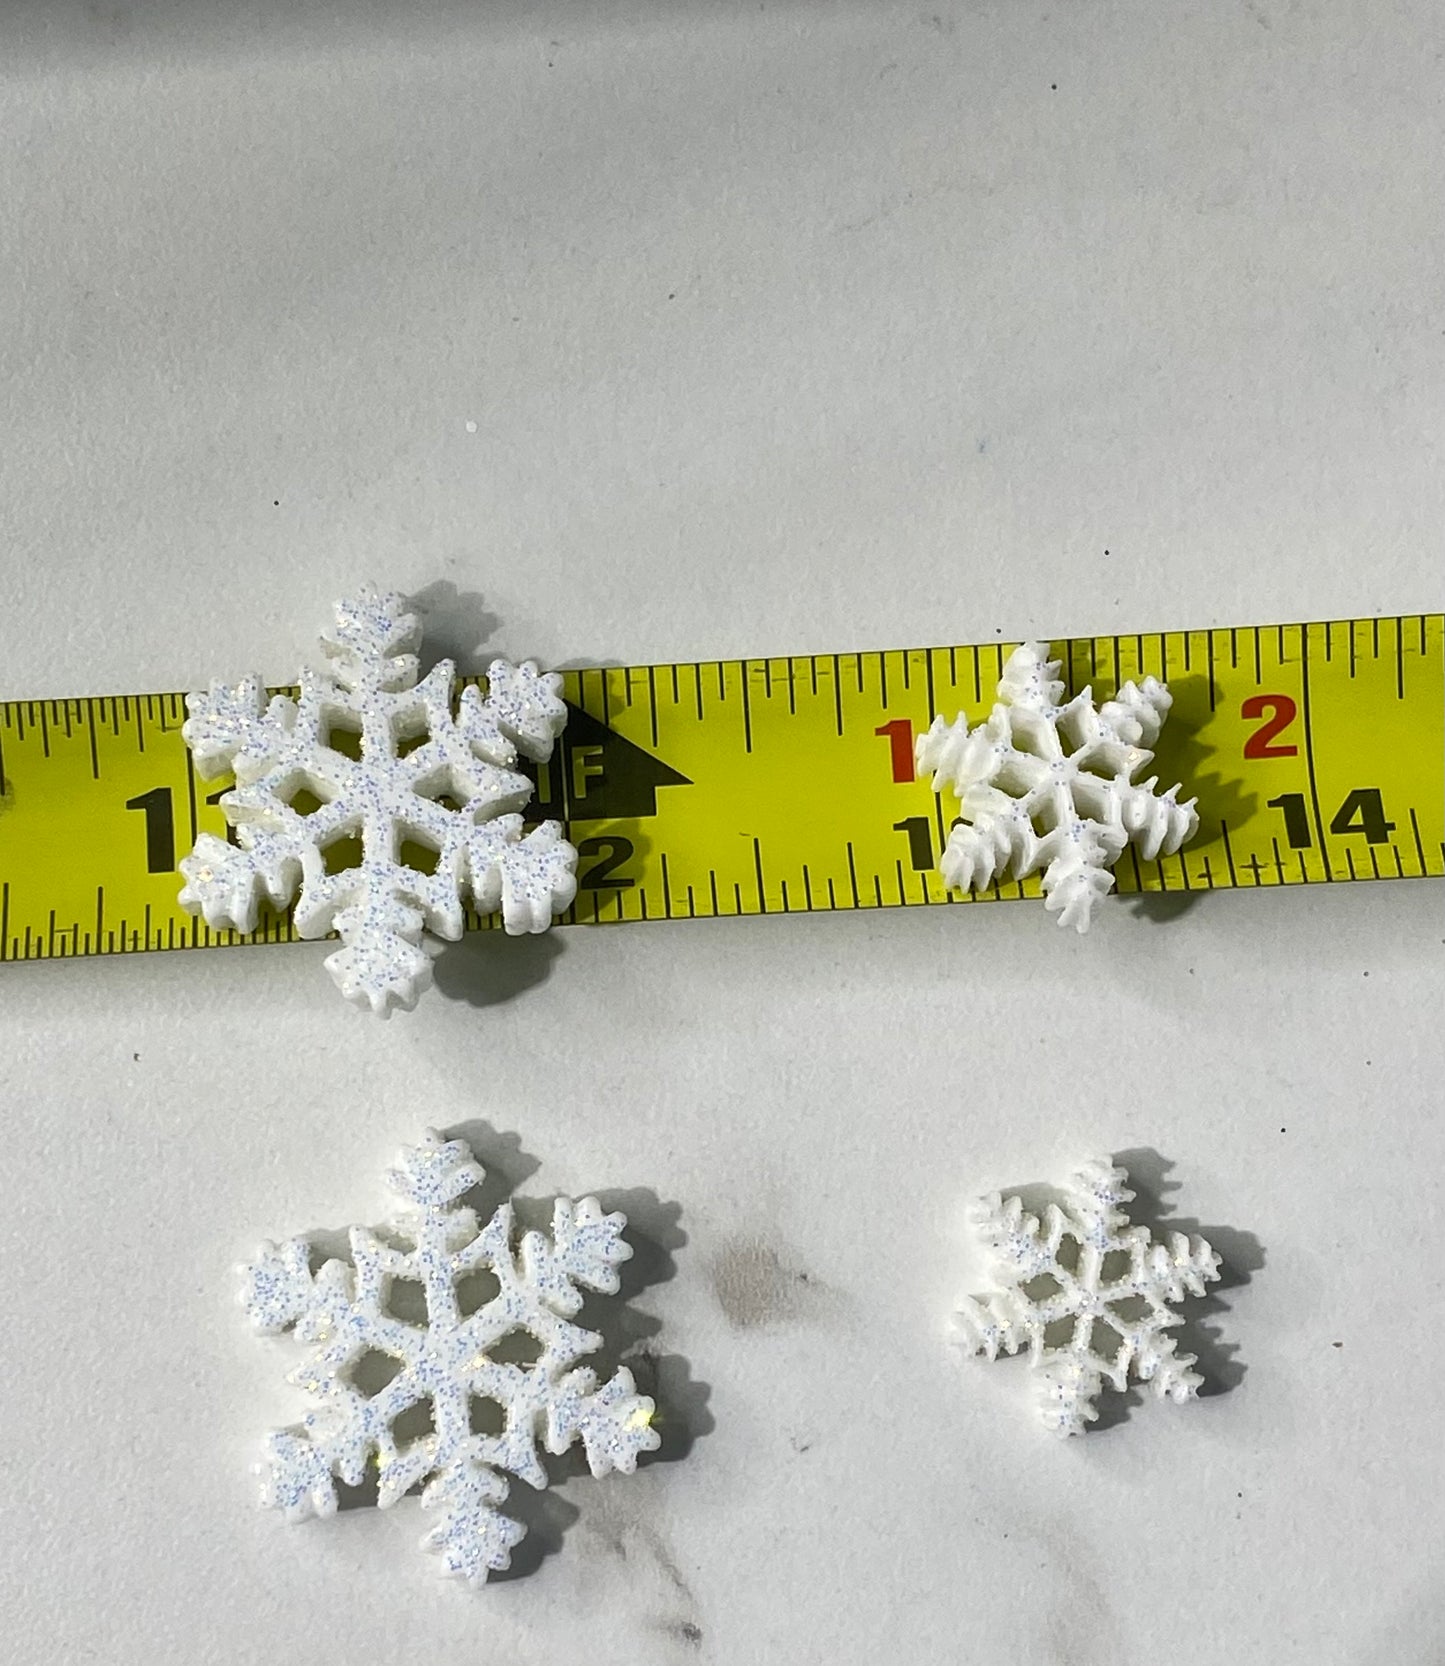 (2) snowflakes